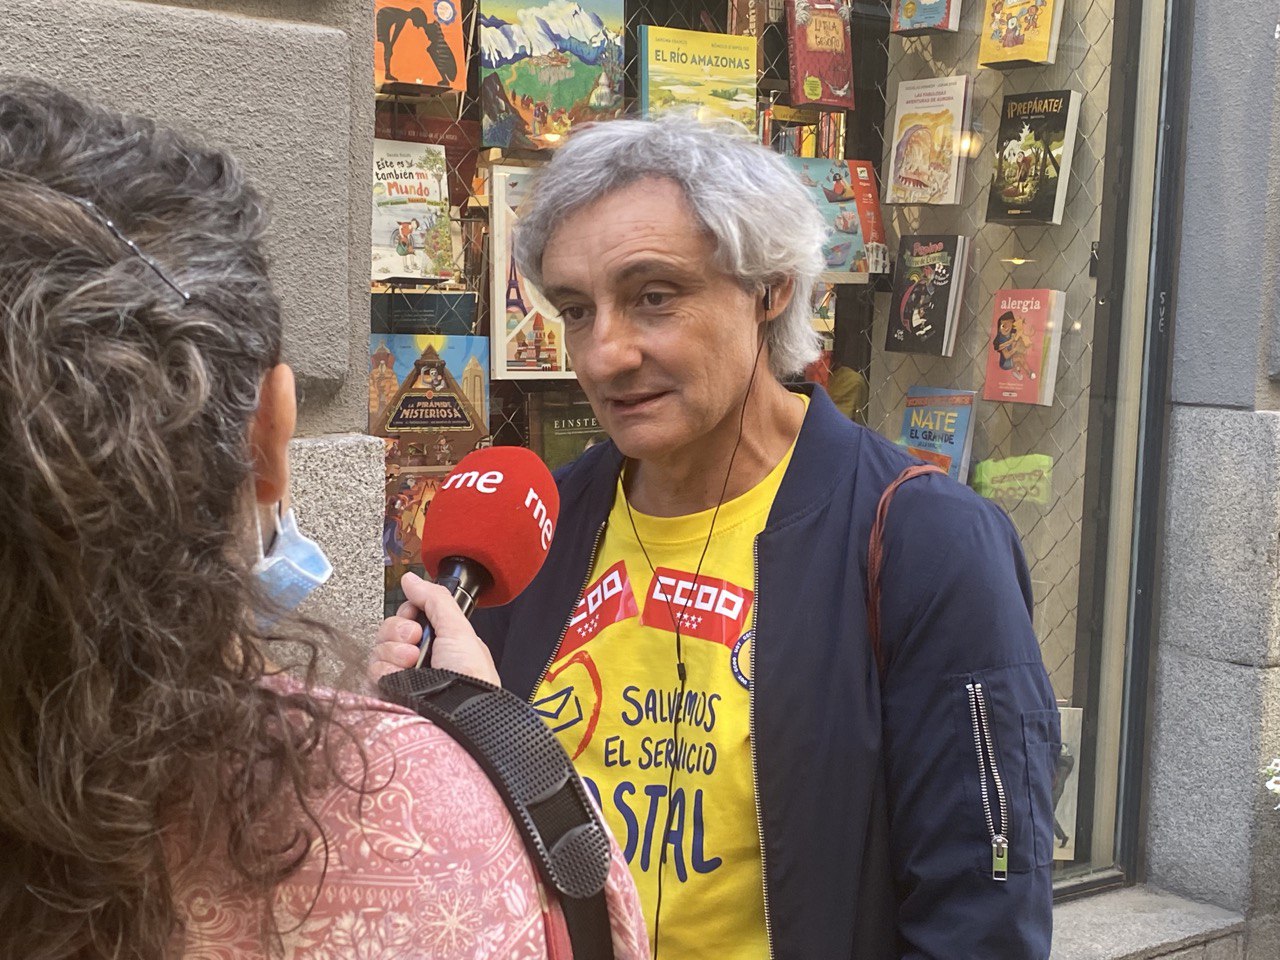 El sindicalista amigo íntimo de Feijóo que lidera la campaña contra Correos